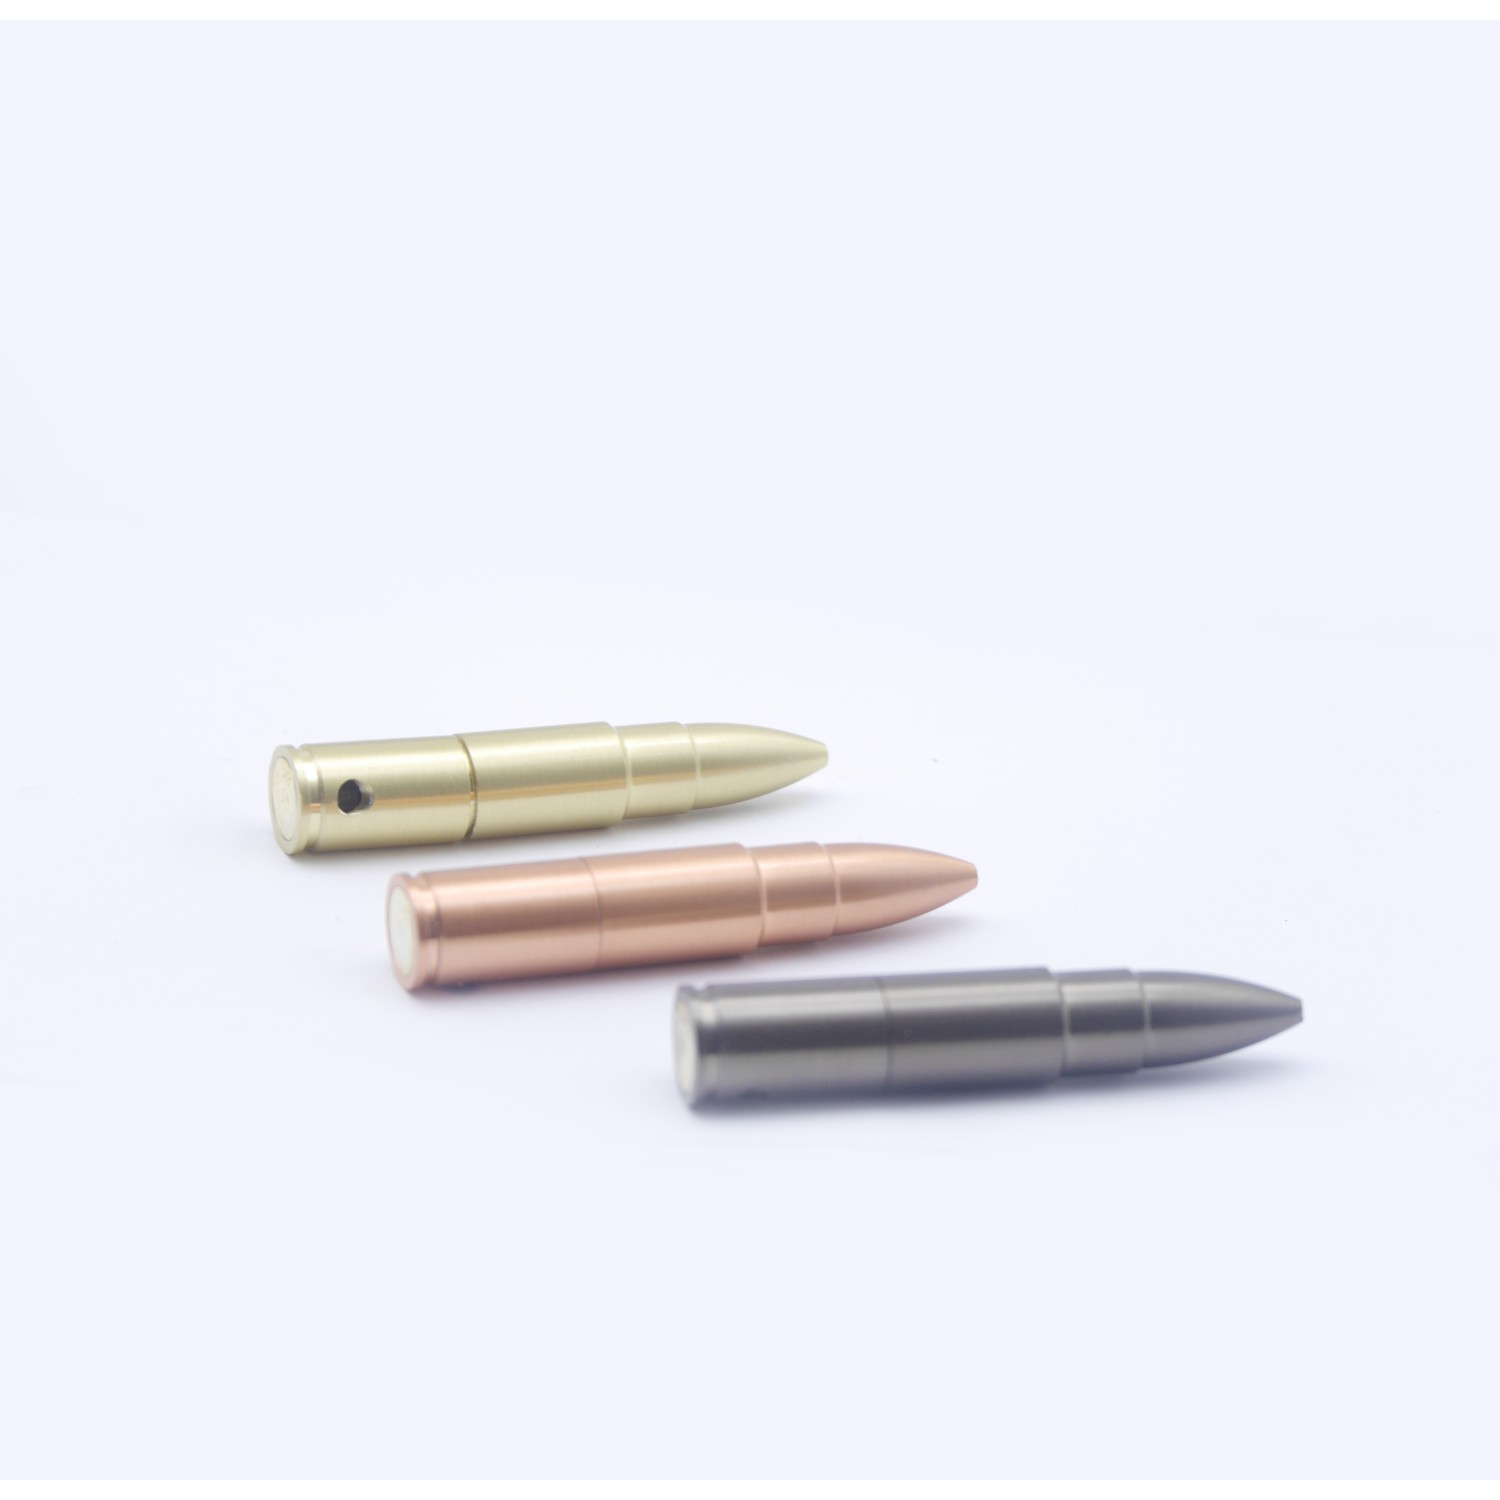 Metallpfeife wie Bullet kugel 8,5cm.VE-12